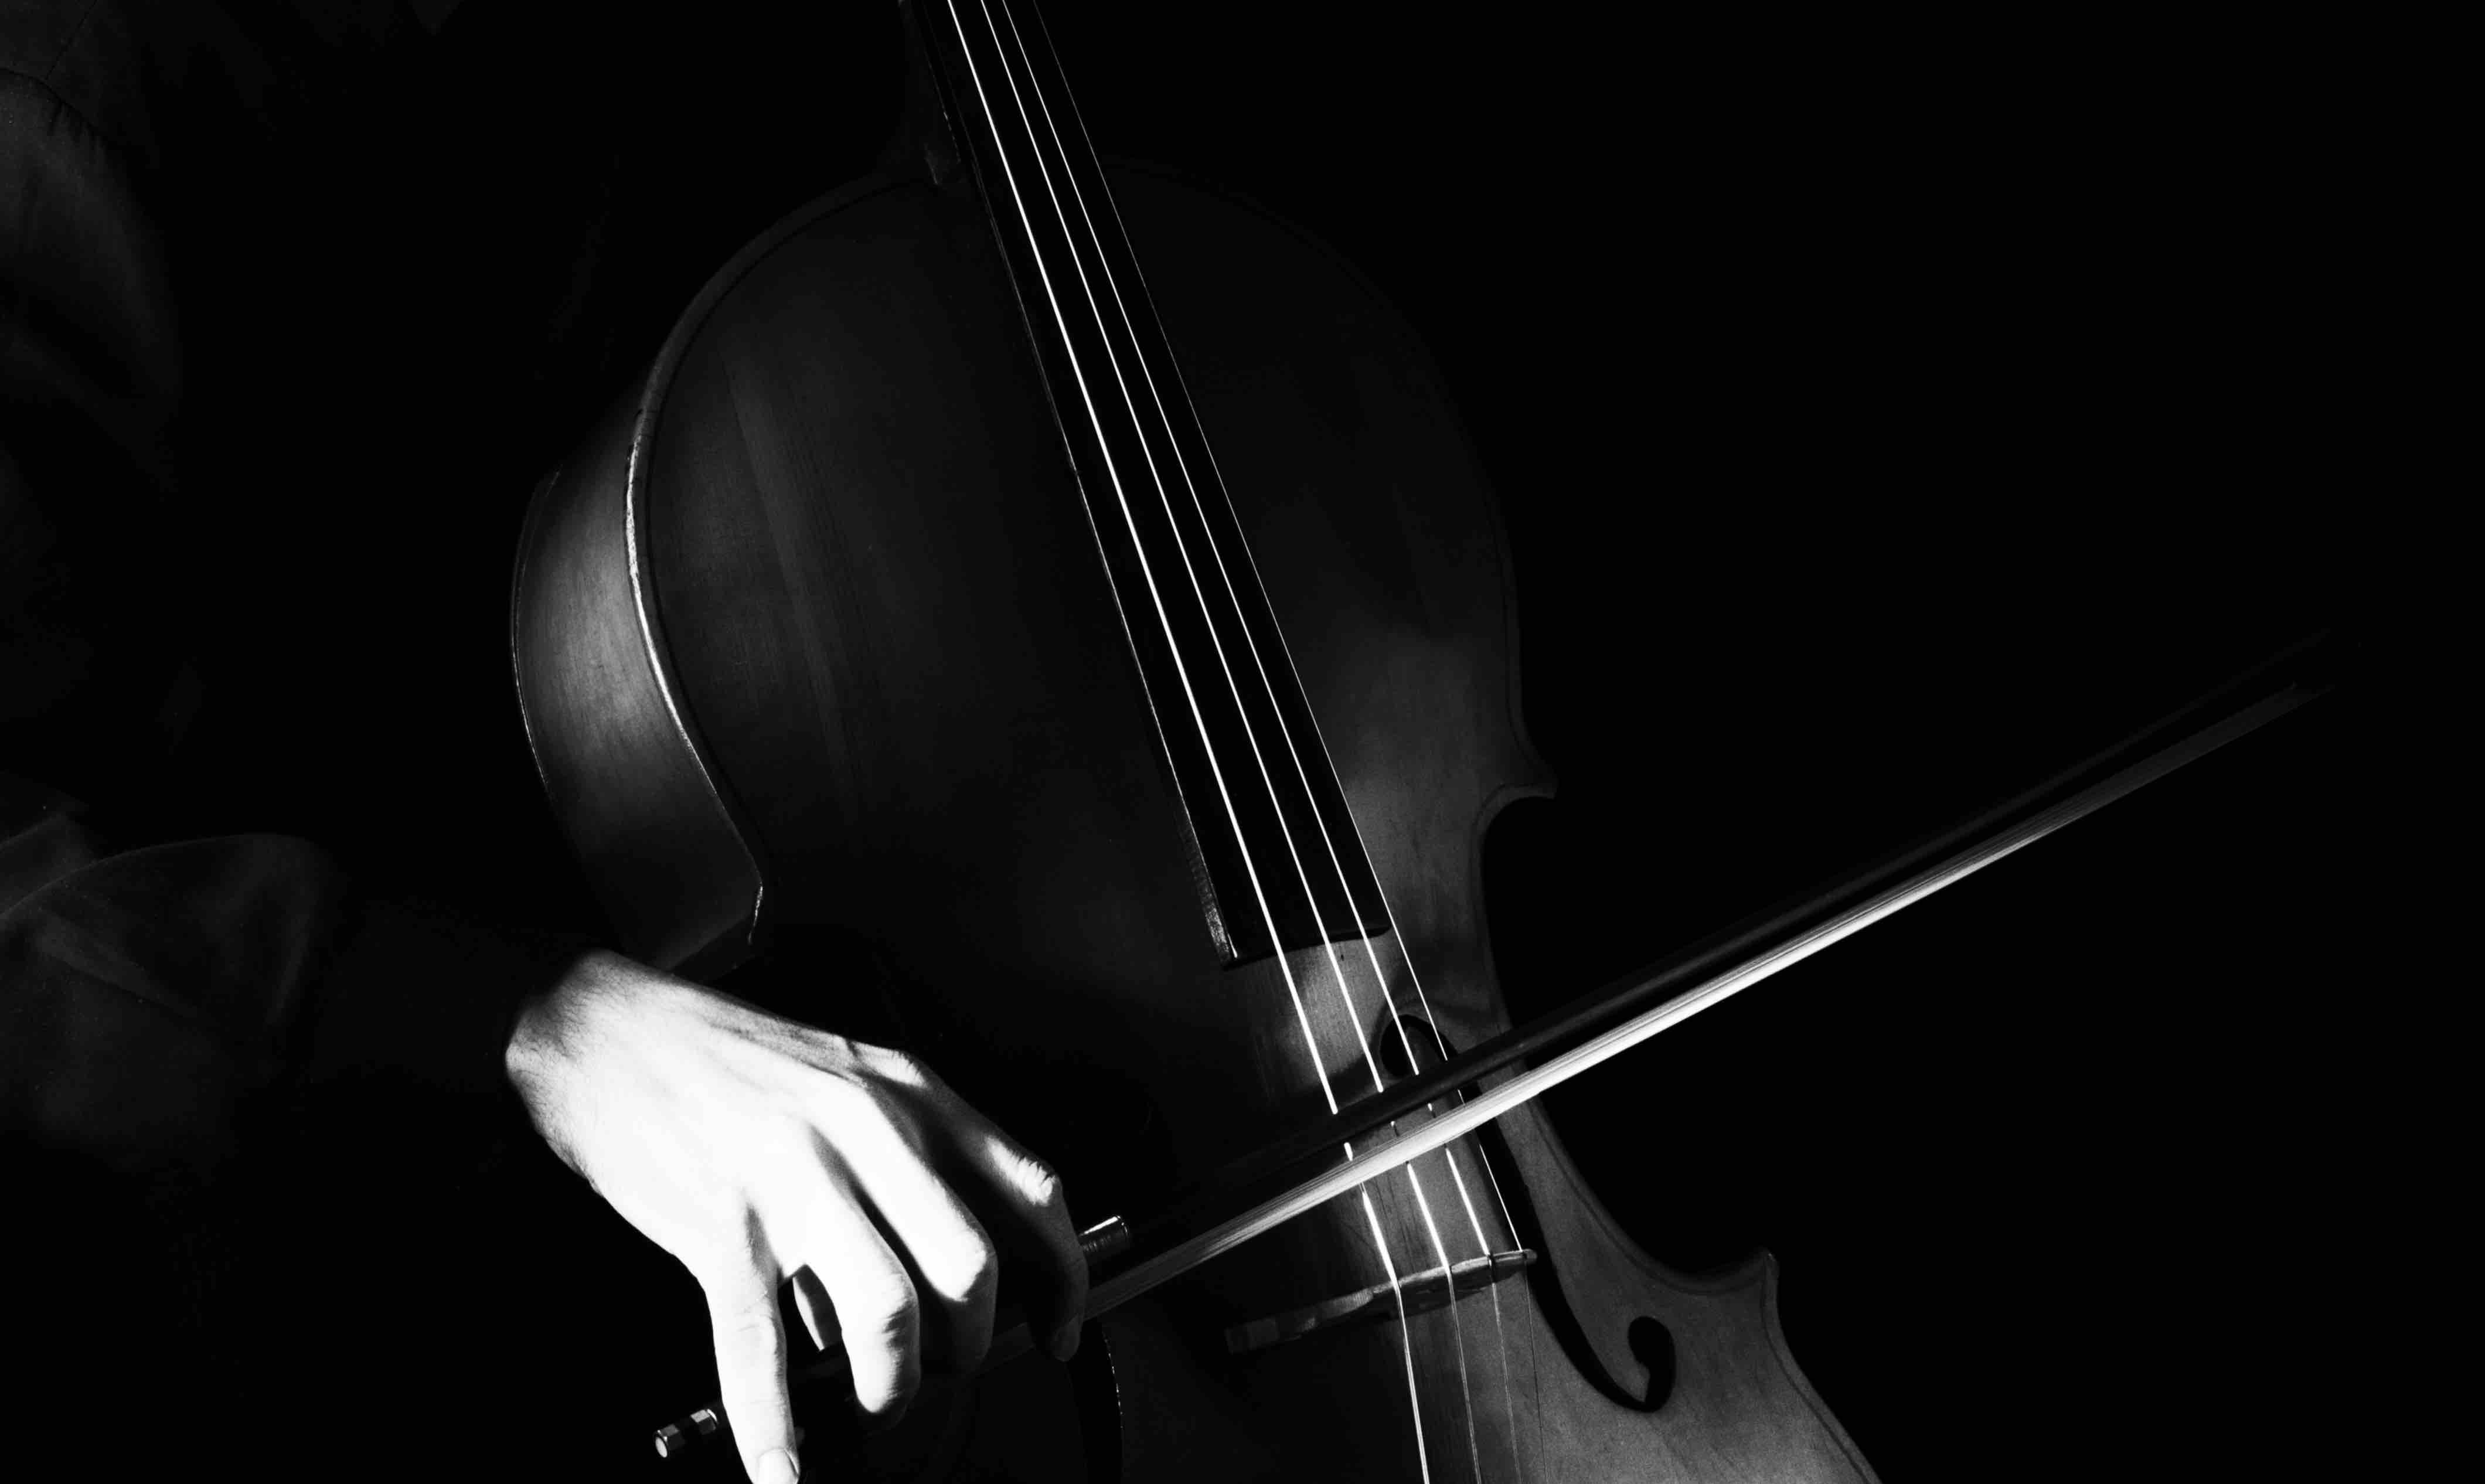 cours de violoncelle cursus adultes paris